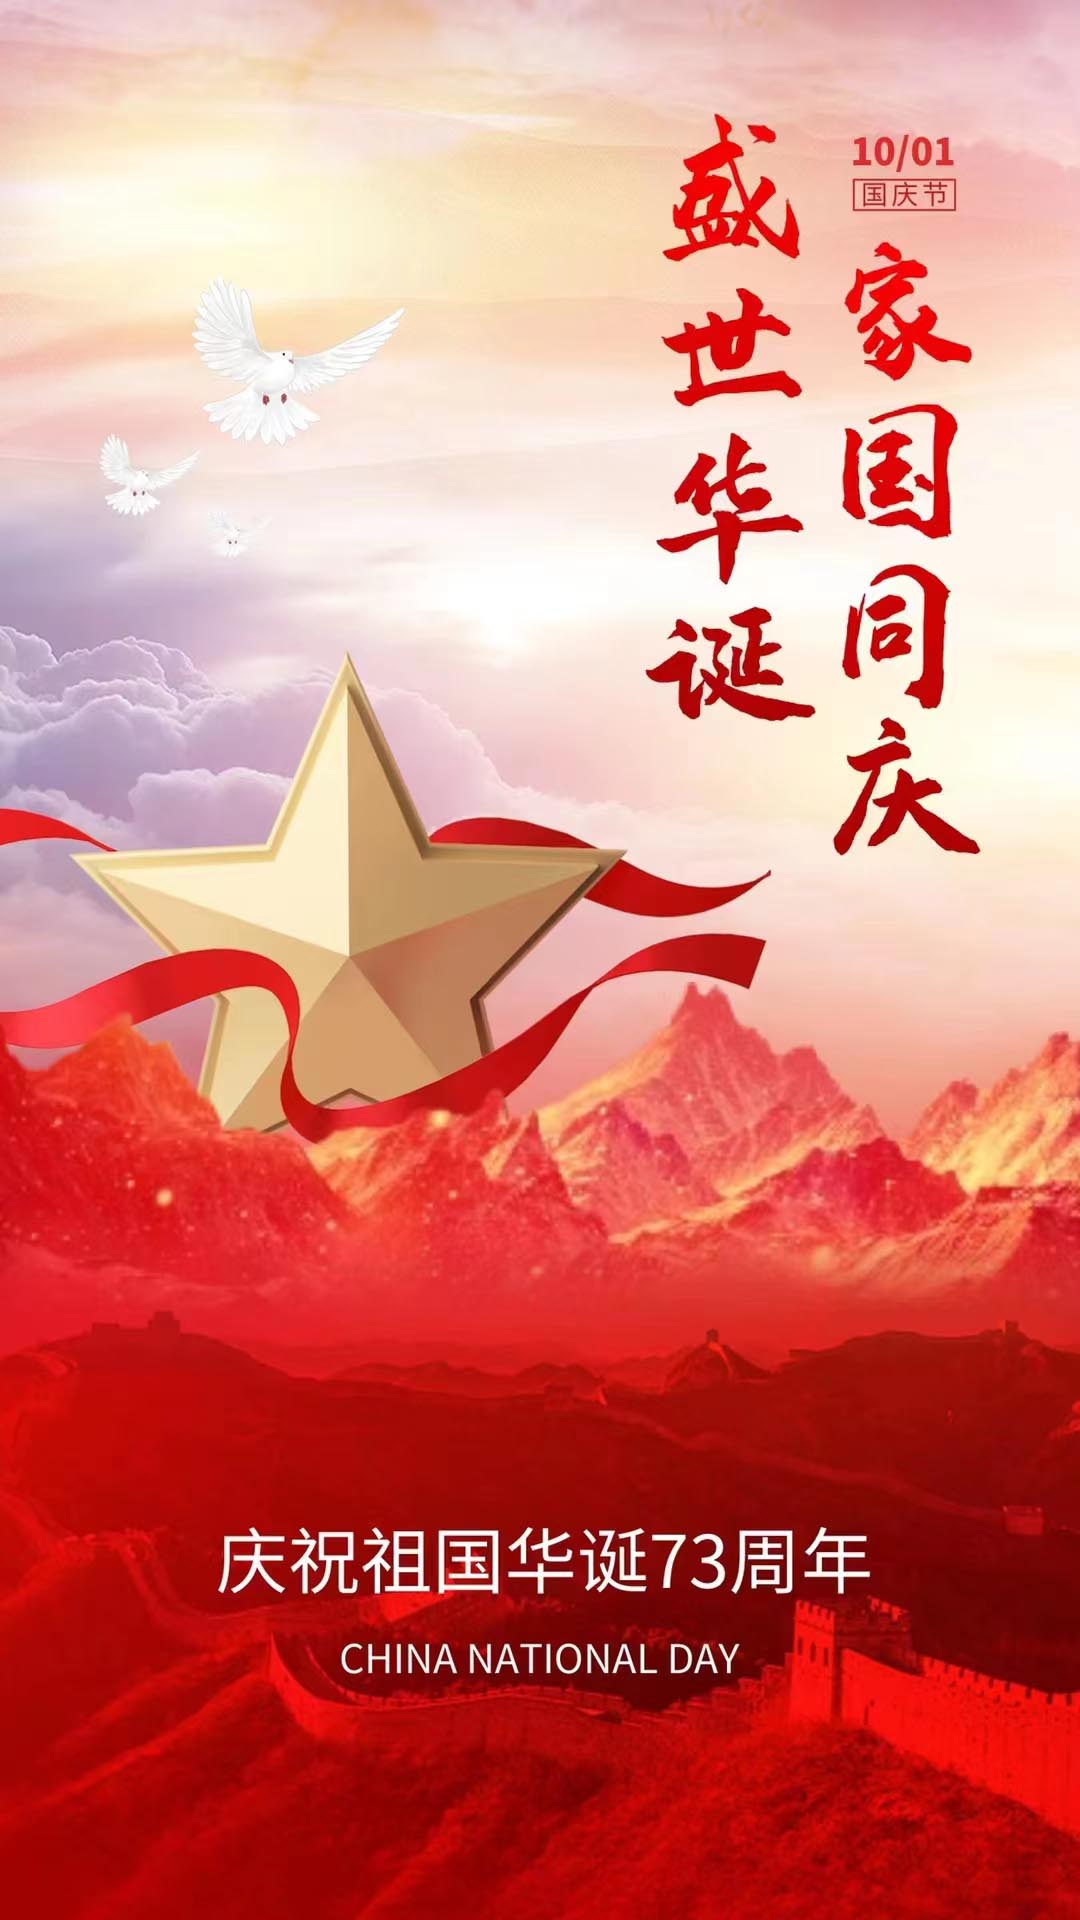 China National Holiday